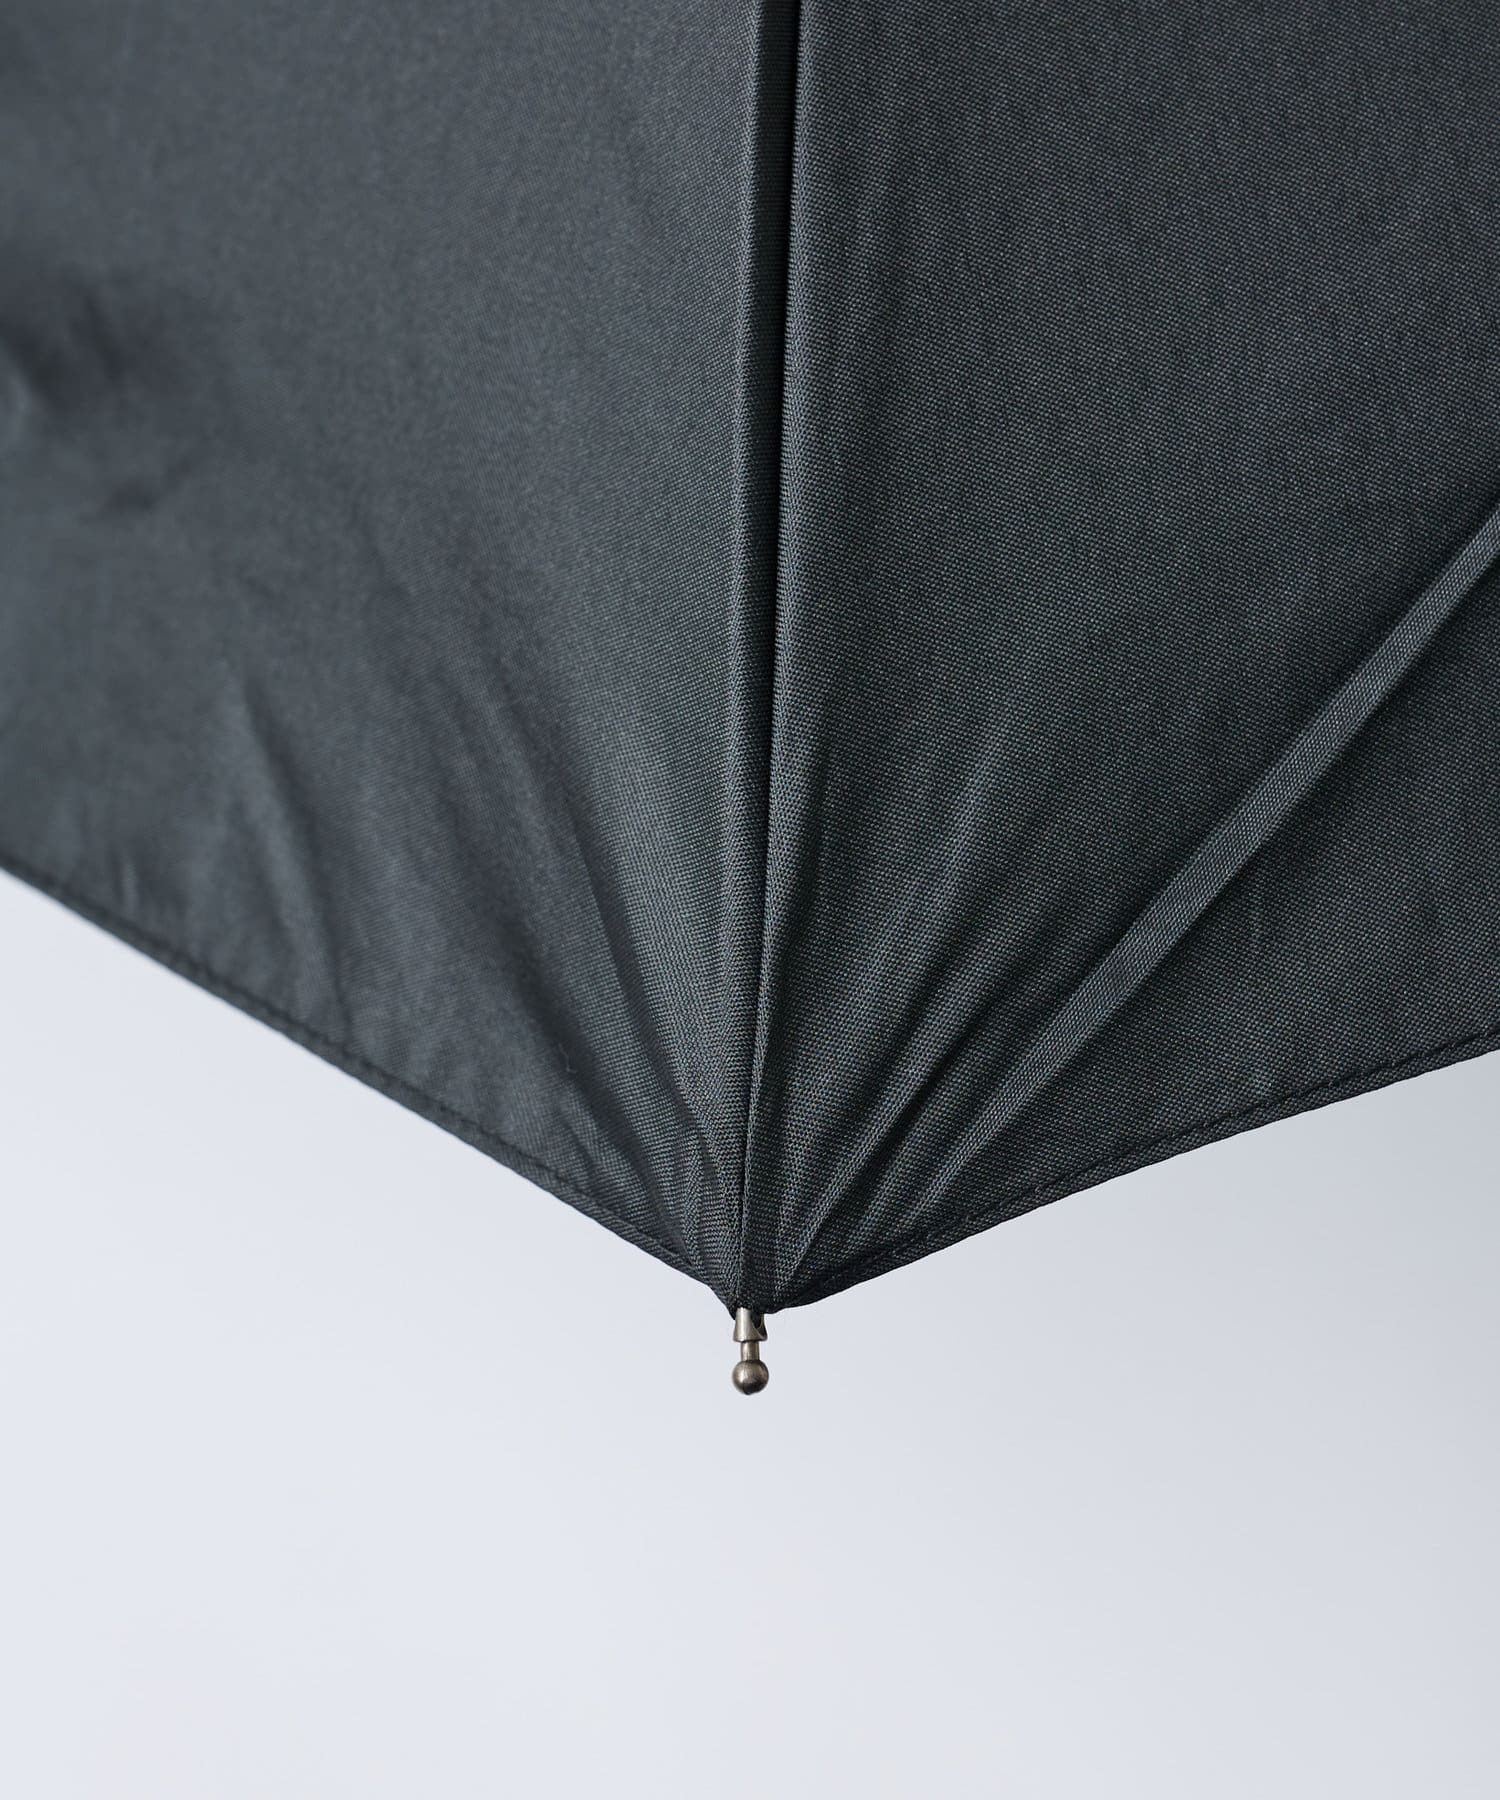 COLONY 2139(コロニー トゥーワンスリーナイン) UV無地コーティング折りたたみ傘